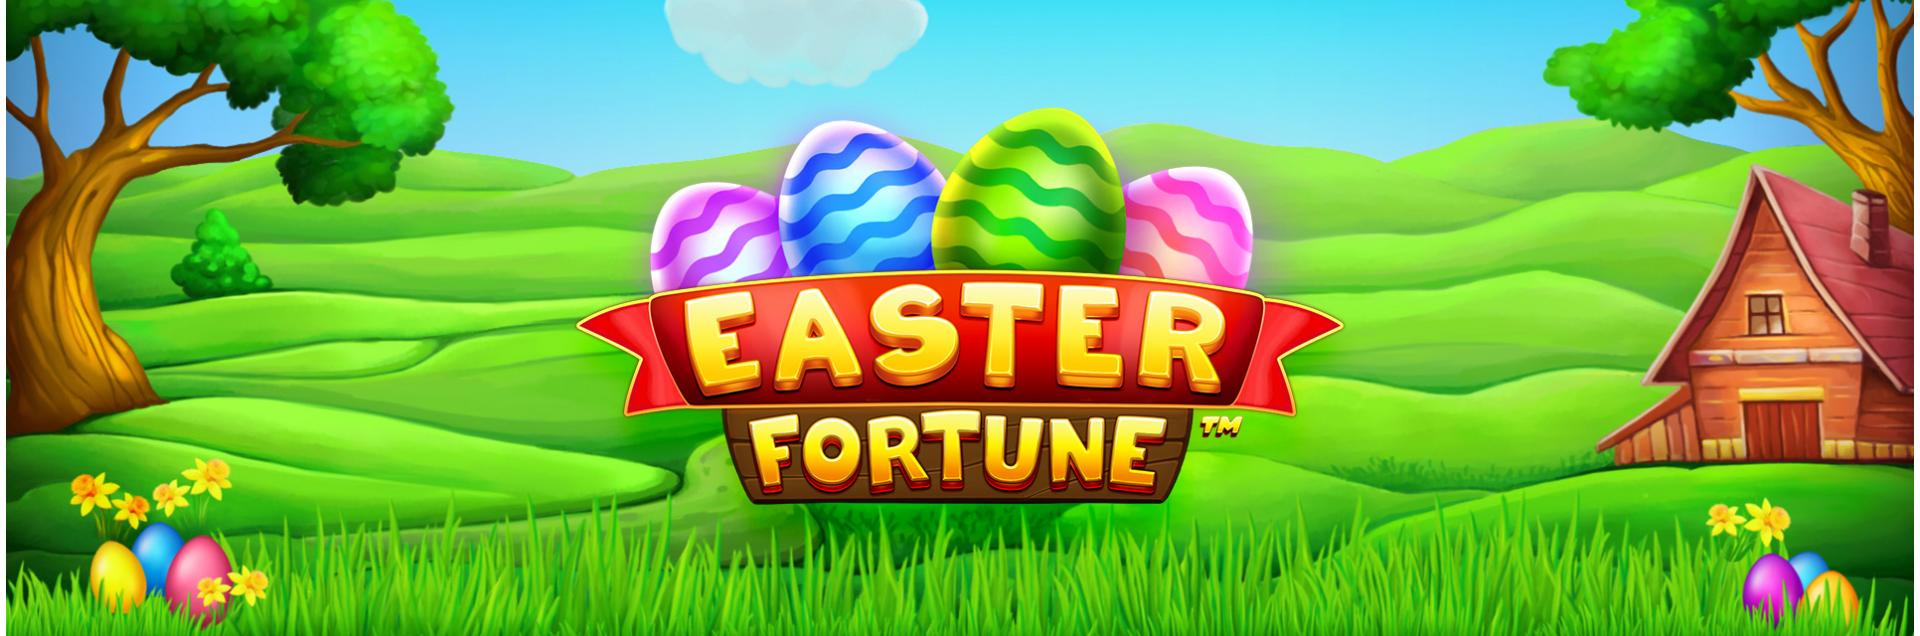 Easter Fortune header games